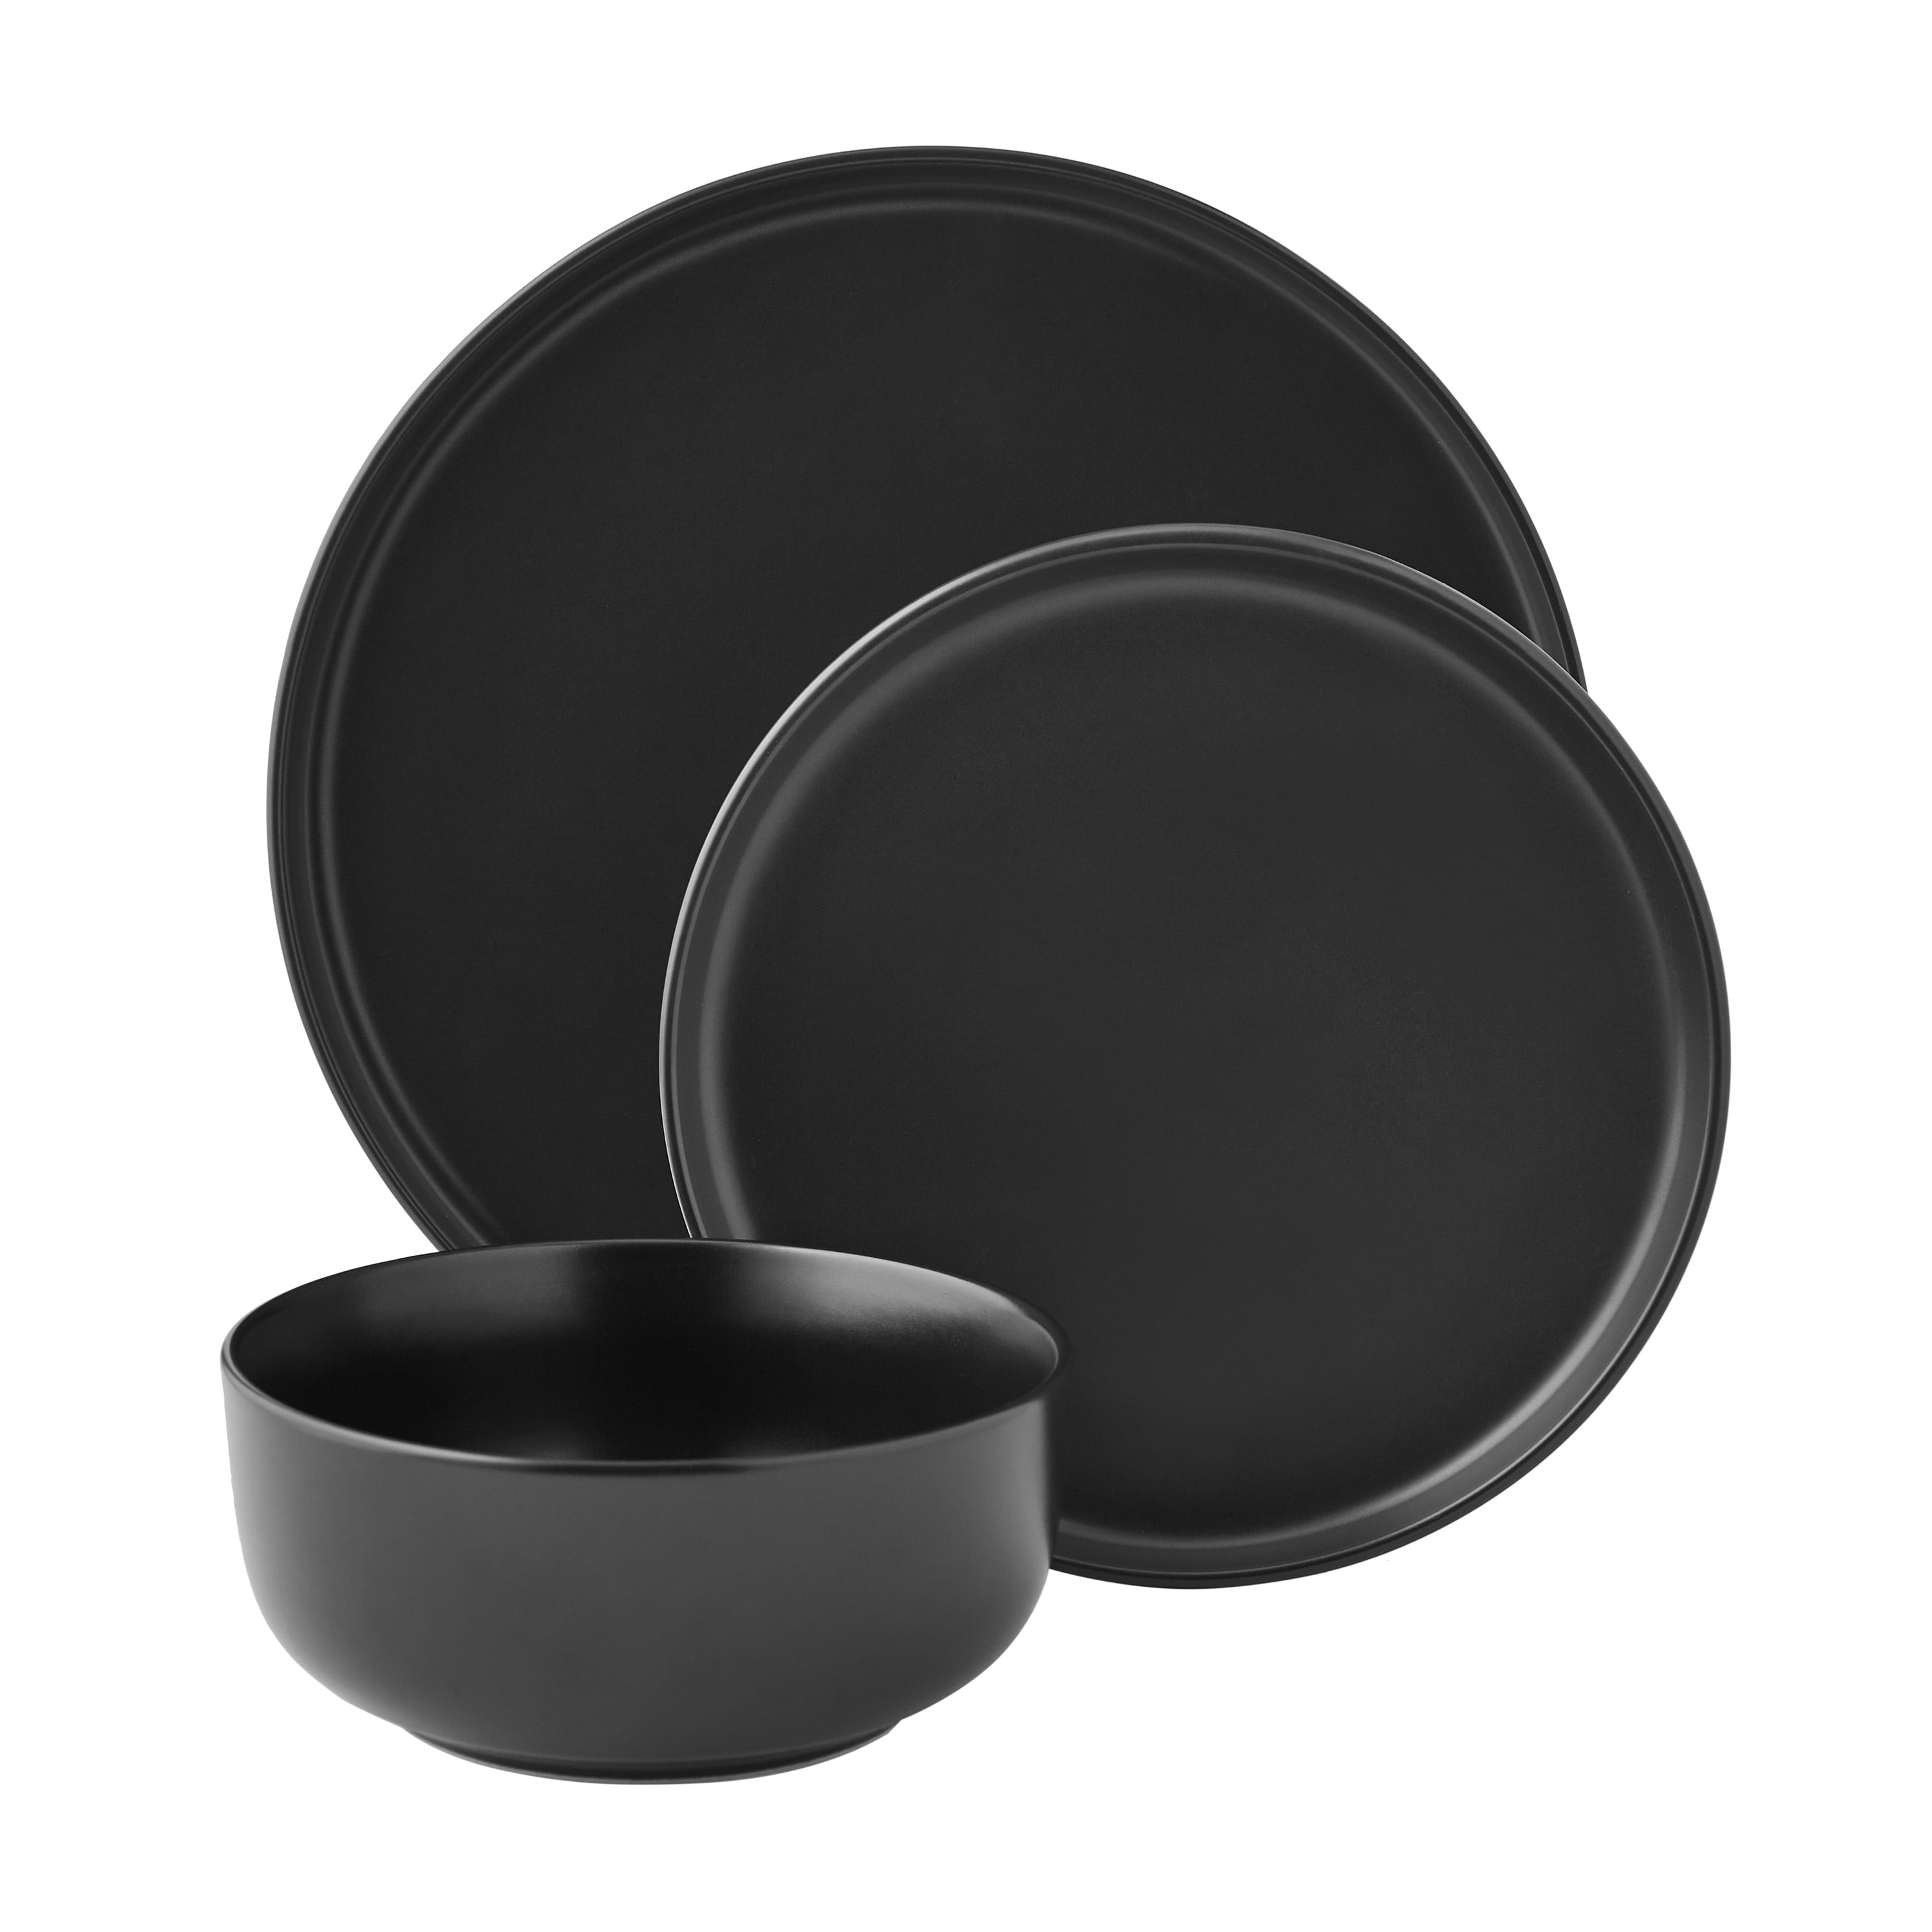 Mainstays Alessandra Matte Black 12-Piece Stoneware Dinnerware Set